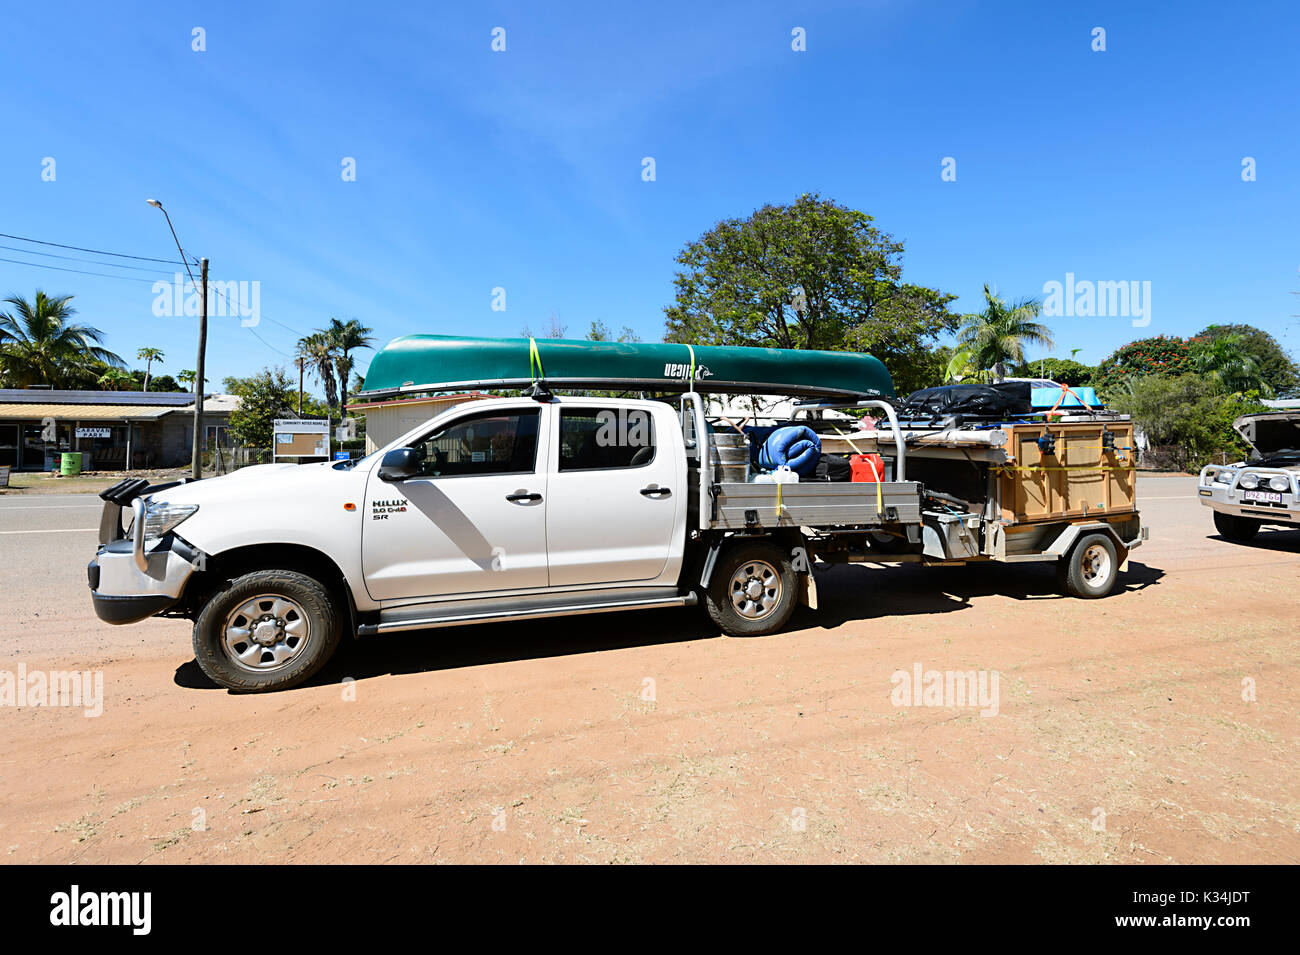 4x4 Toyota Hilux mit Kajak auf dem Dach und Wohnmobil-Anhänger, Queensland, QLD, Australien Stockfoto